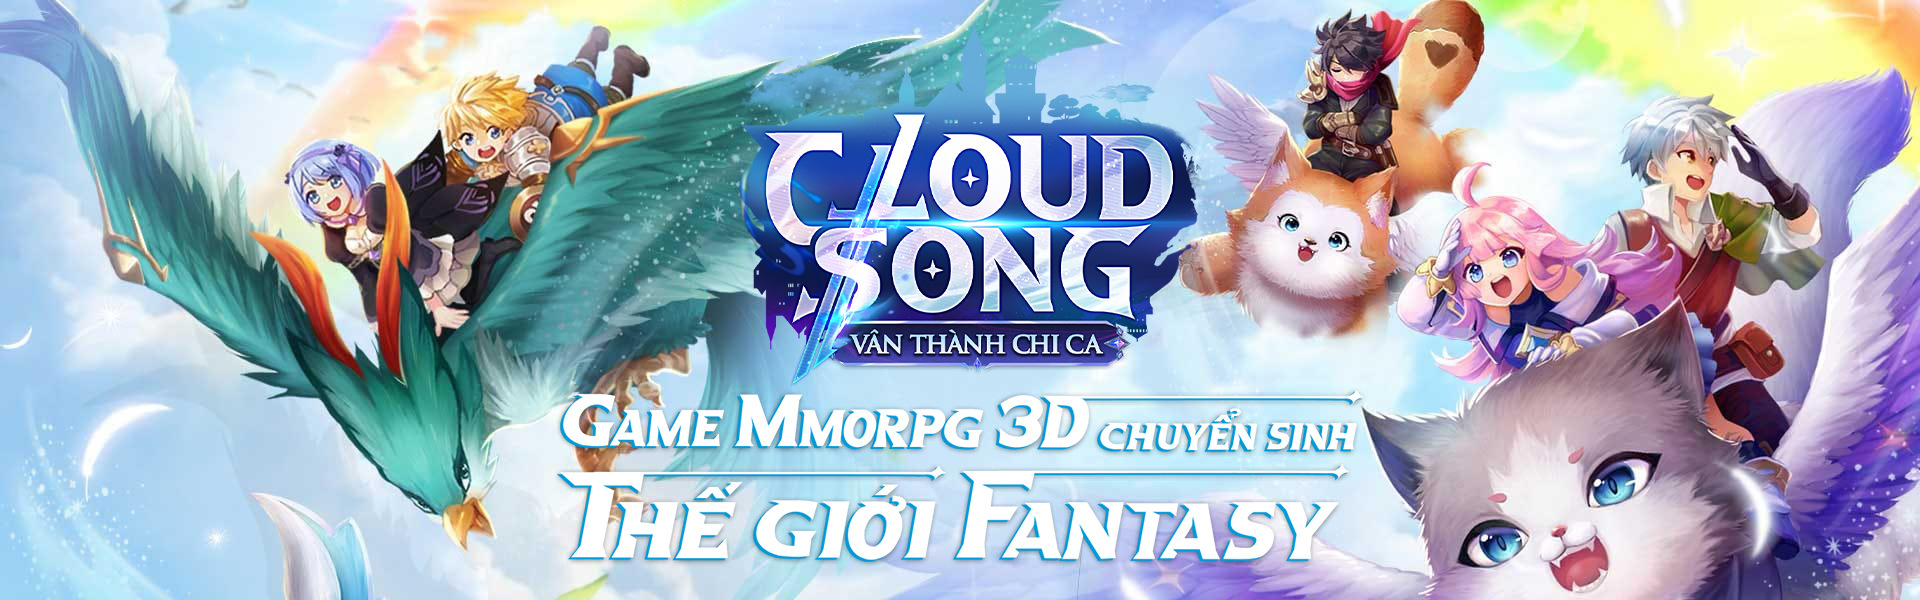 Cloud Song VNG: Bom tấn MMORPG hóa thân anh hùng trong thế giới fantasy đầy hấp dẫn